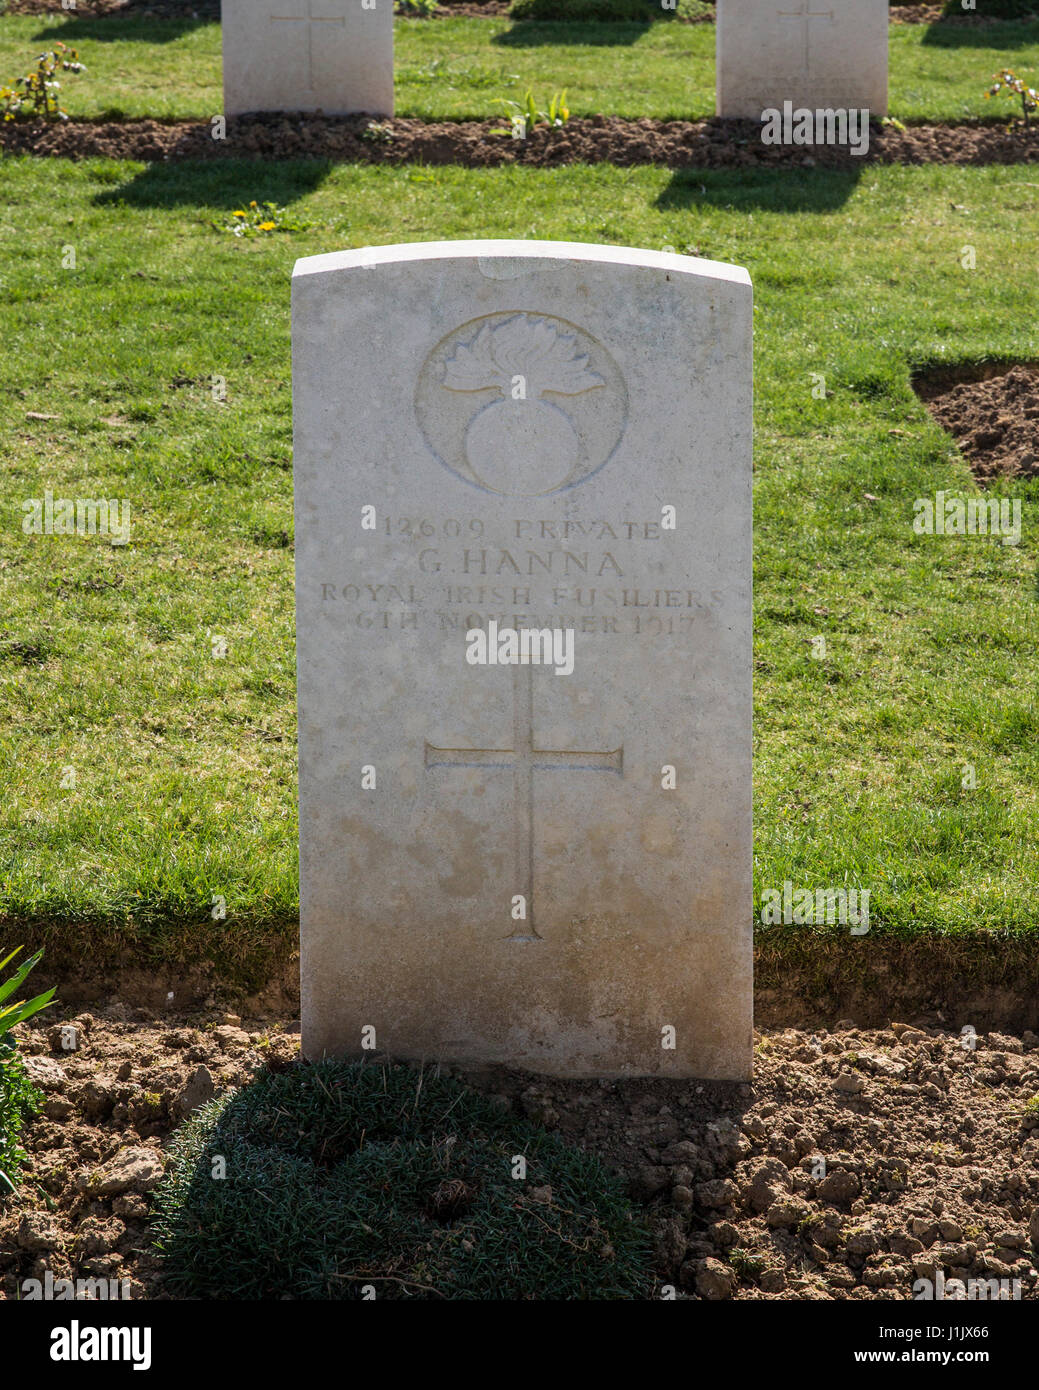 Tomba di Pte G Hanna Royal Irish Fusiliers, giustiziato per diserzione 1917 Foto Stock